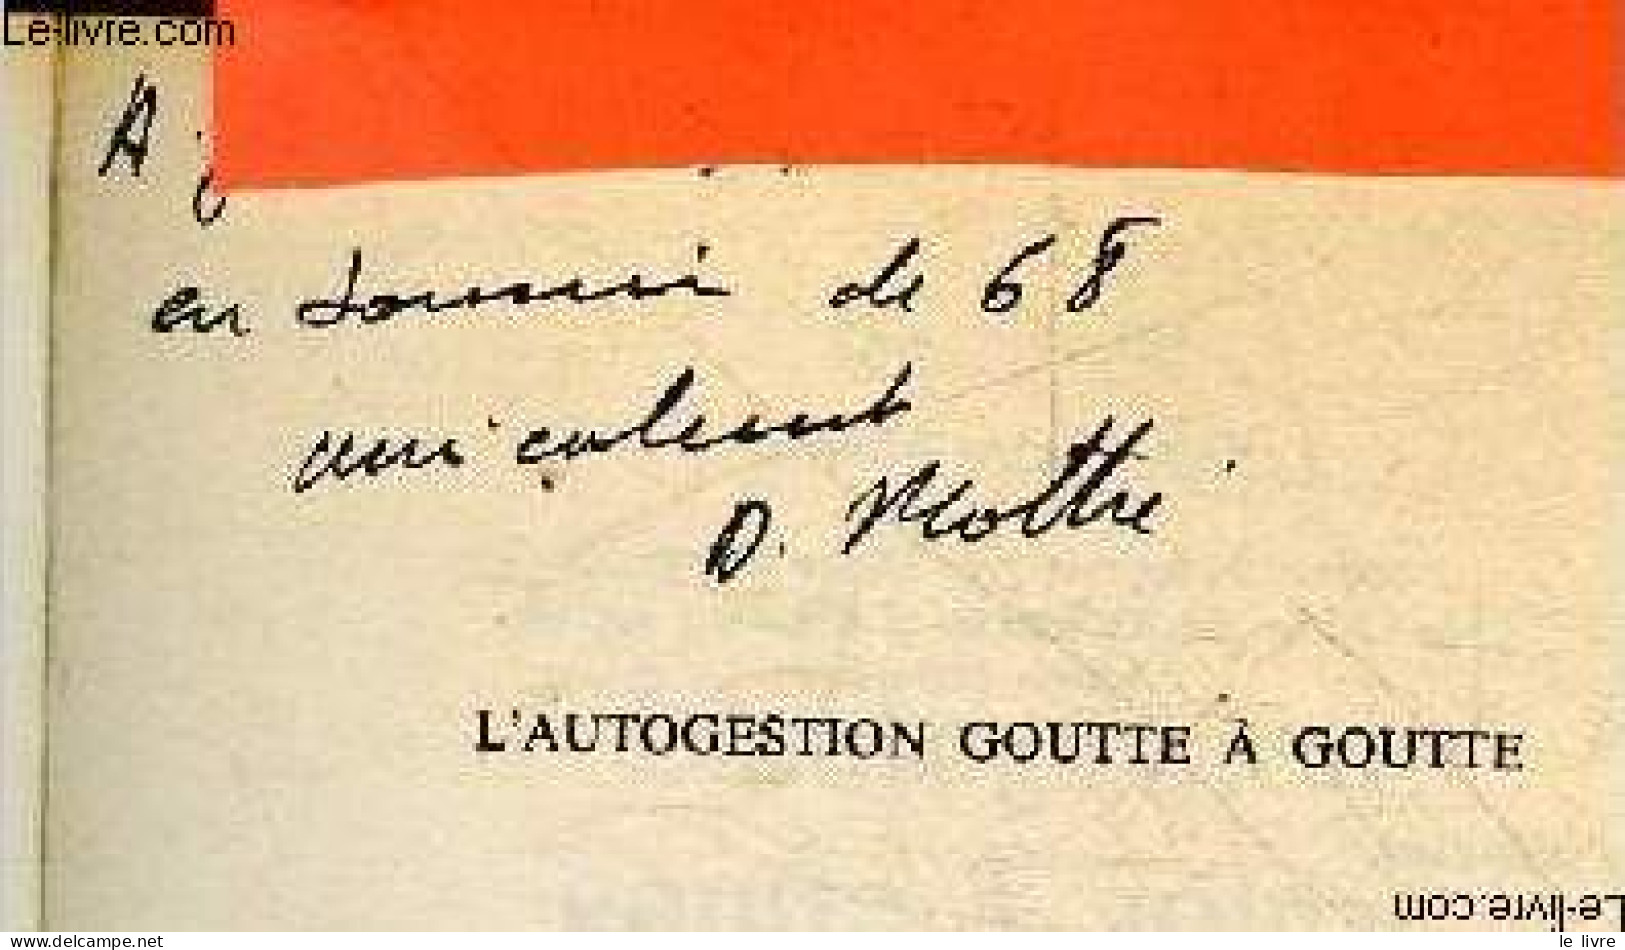 L'autogestion Goutte A Goutte - Collection Faire Notre Histoire - + Envoi De L'auteur - MOTHE DANIEL - 1980 - Libri Con Dedica